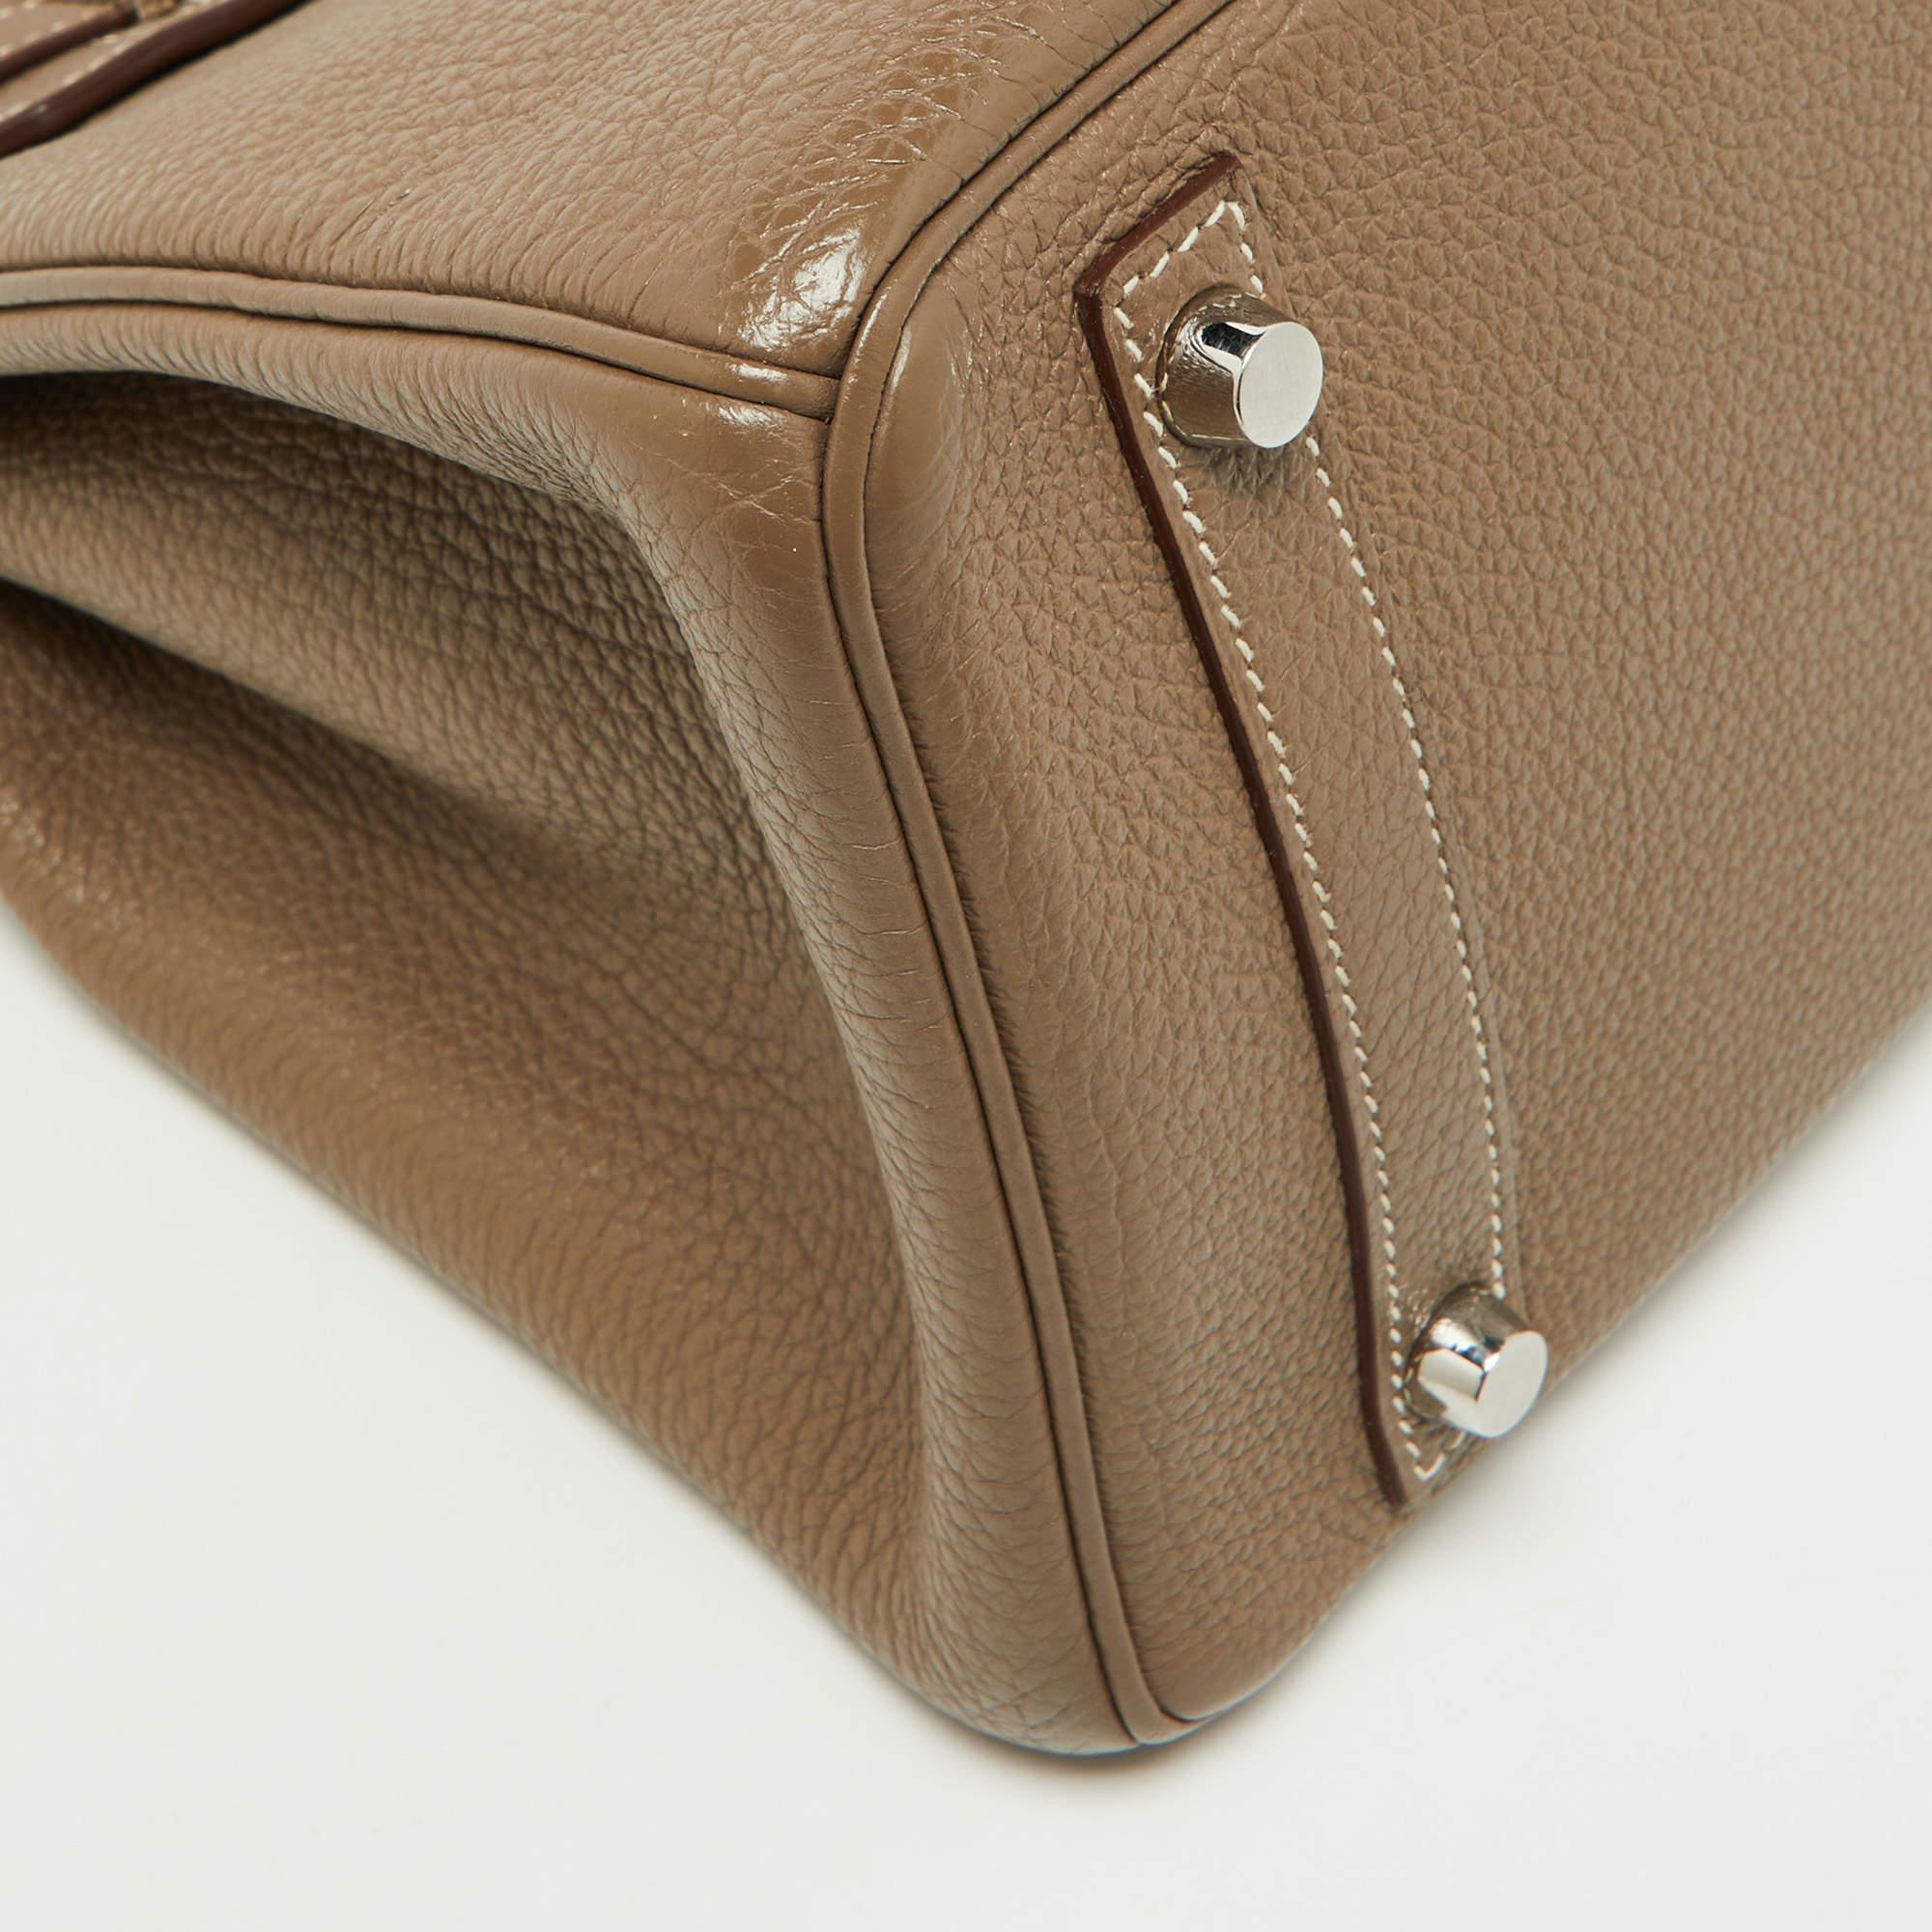 Hermes Etoupe Togo Leather Palladium Finish Birkin 30 Bag For Sale 4